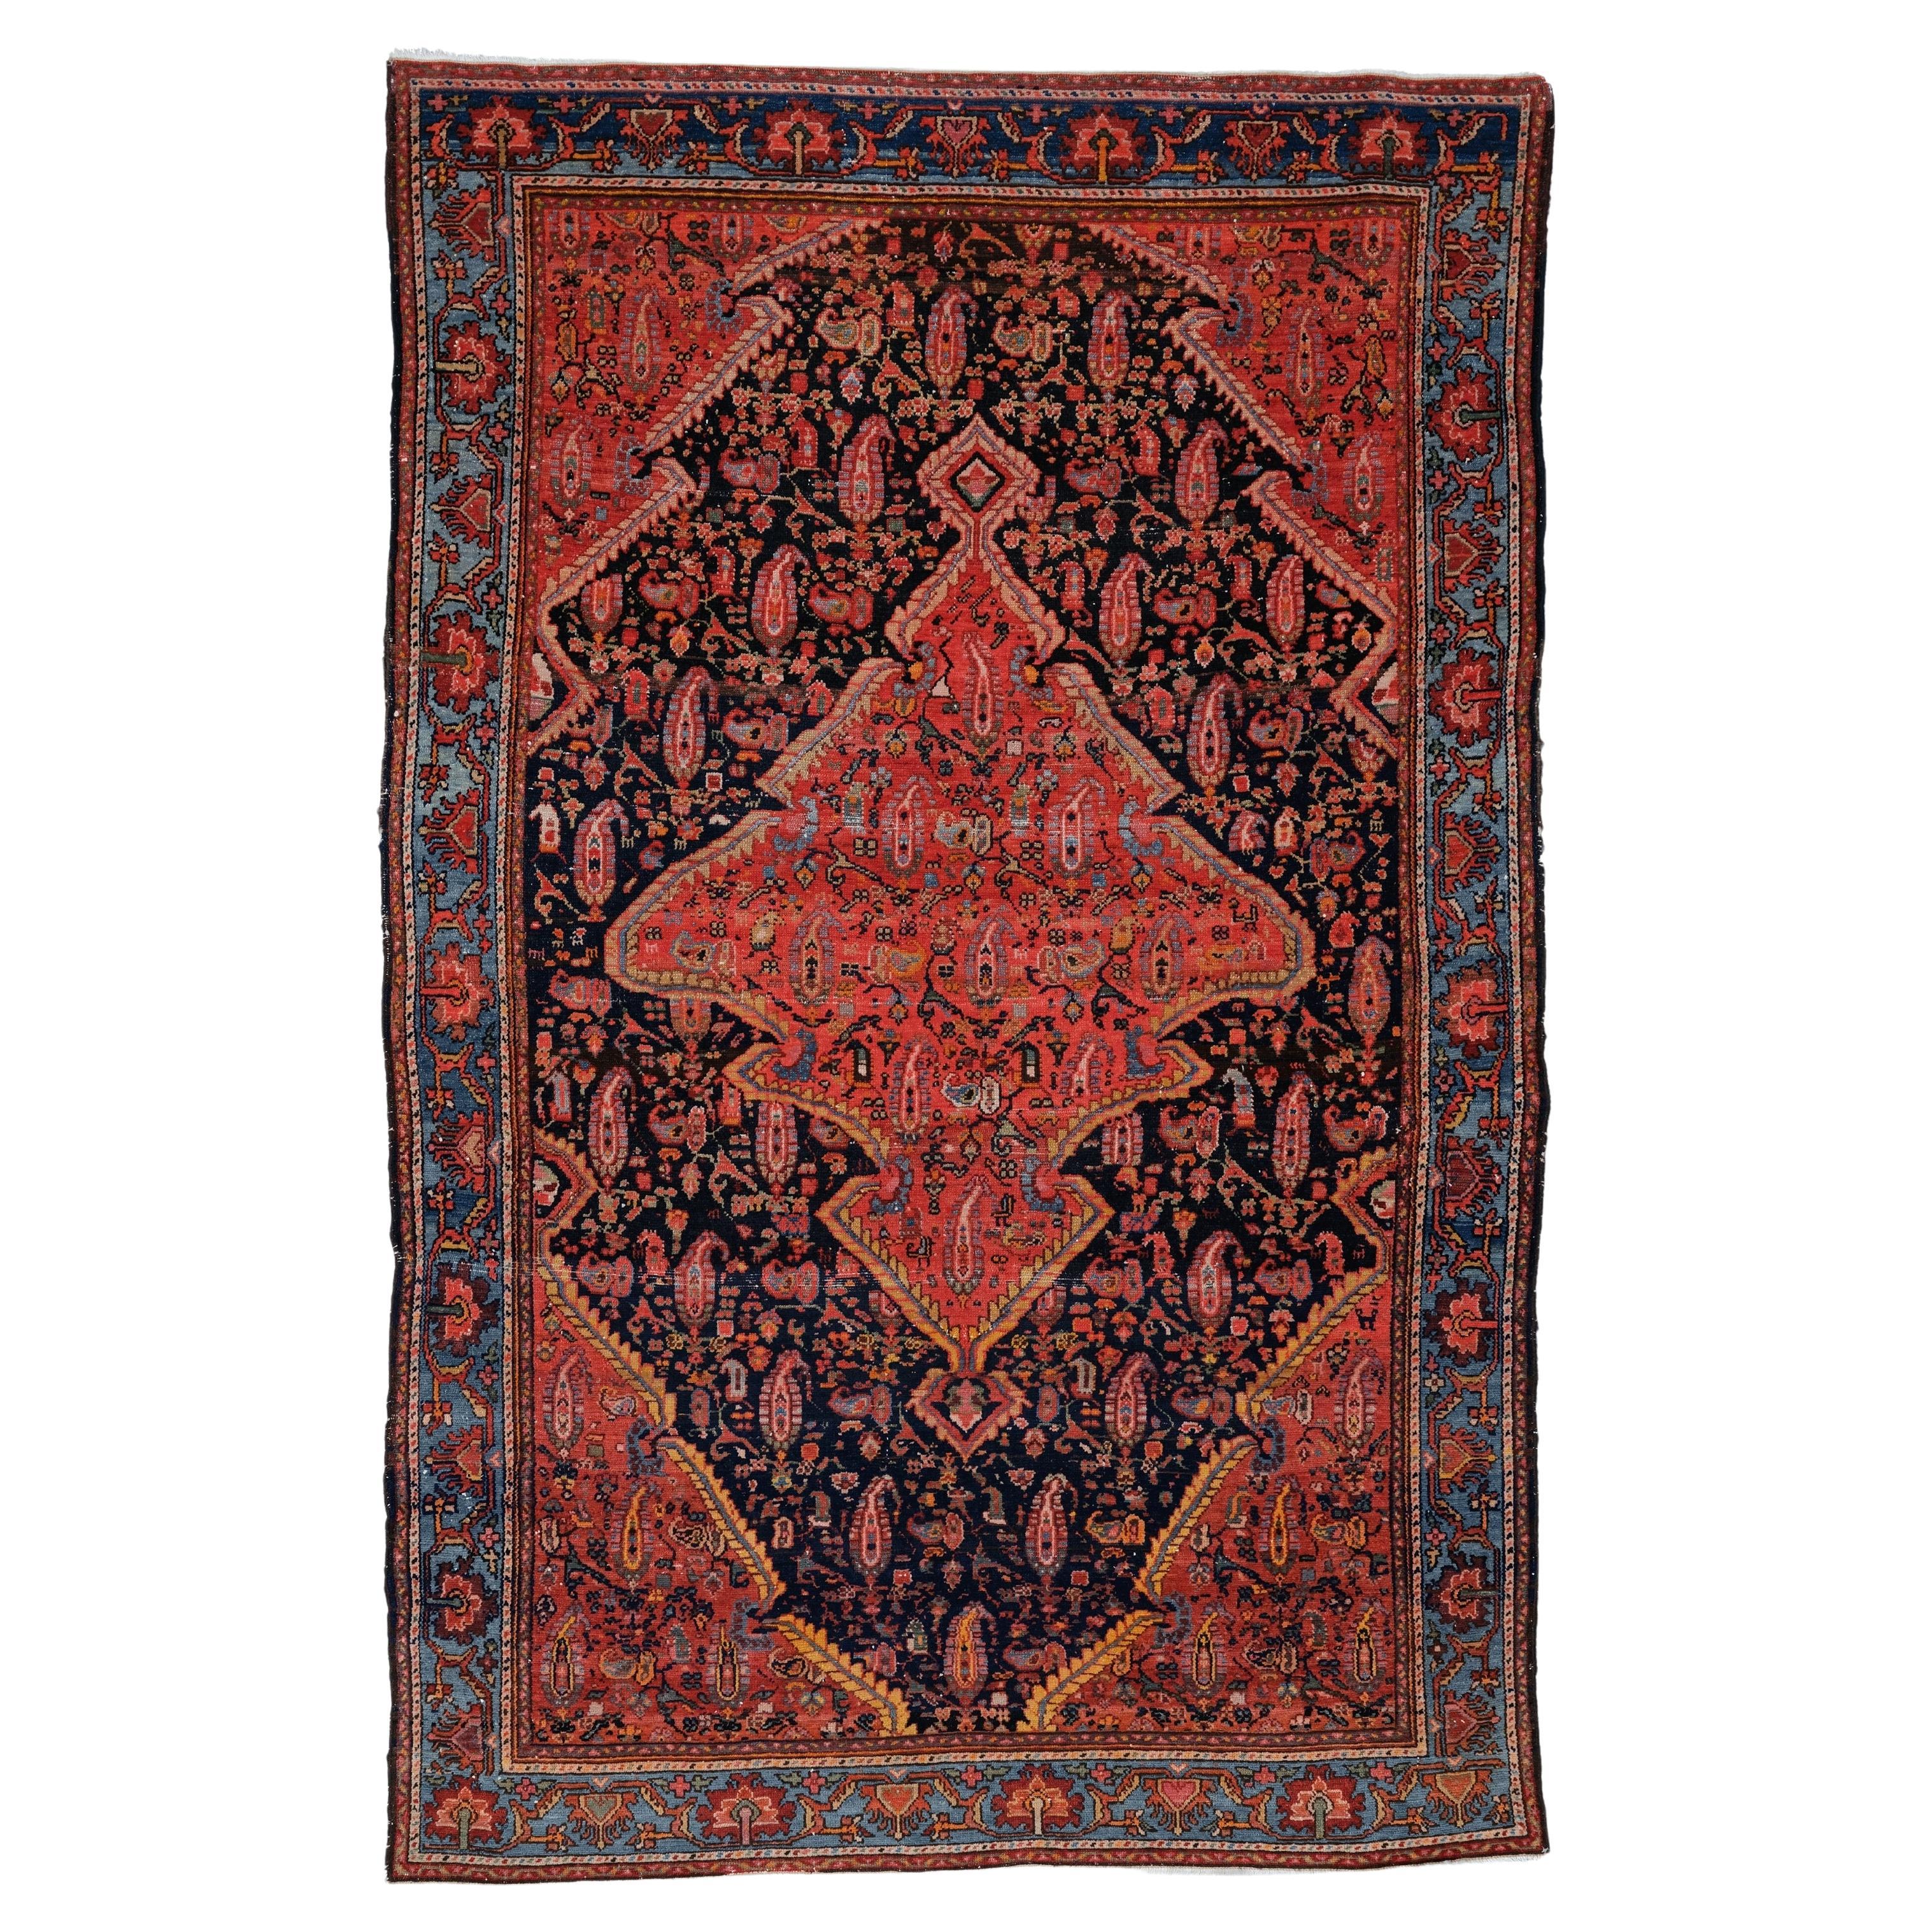 Antiker Melayer-Teppich - 19. Jahrhundert Melayer-Teppich, Vintage-Teppich, Malayer-Teppich